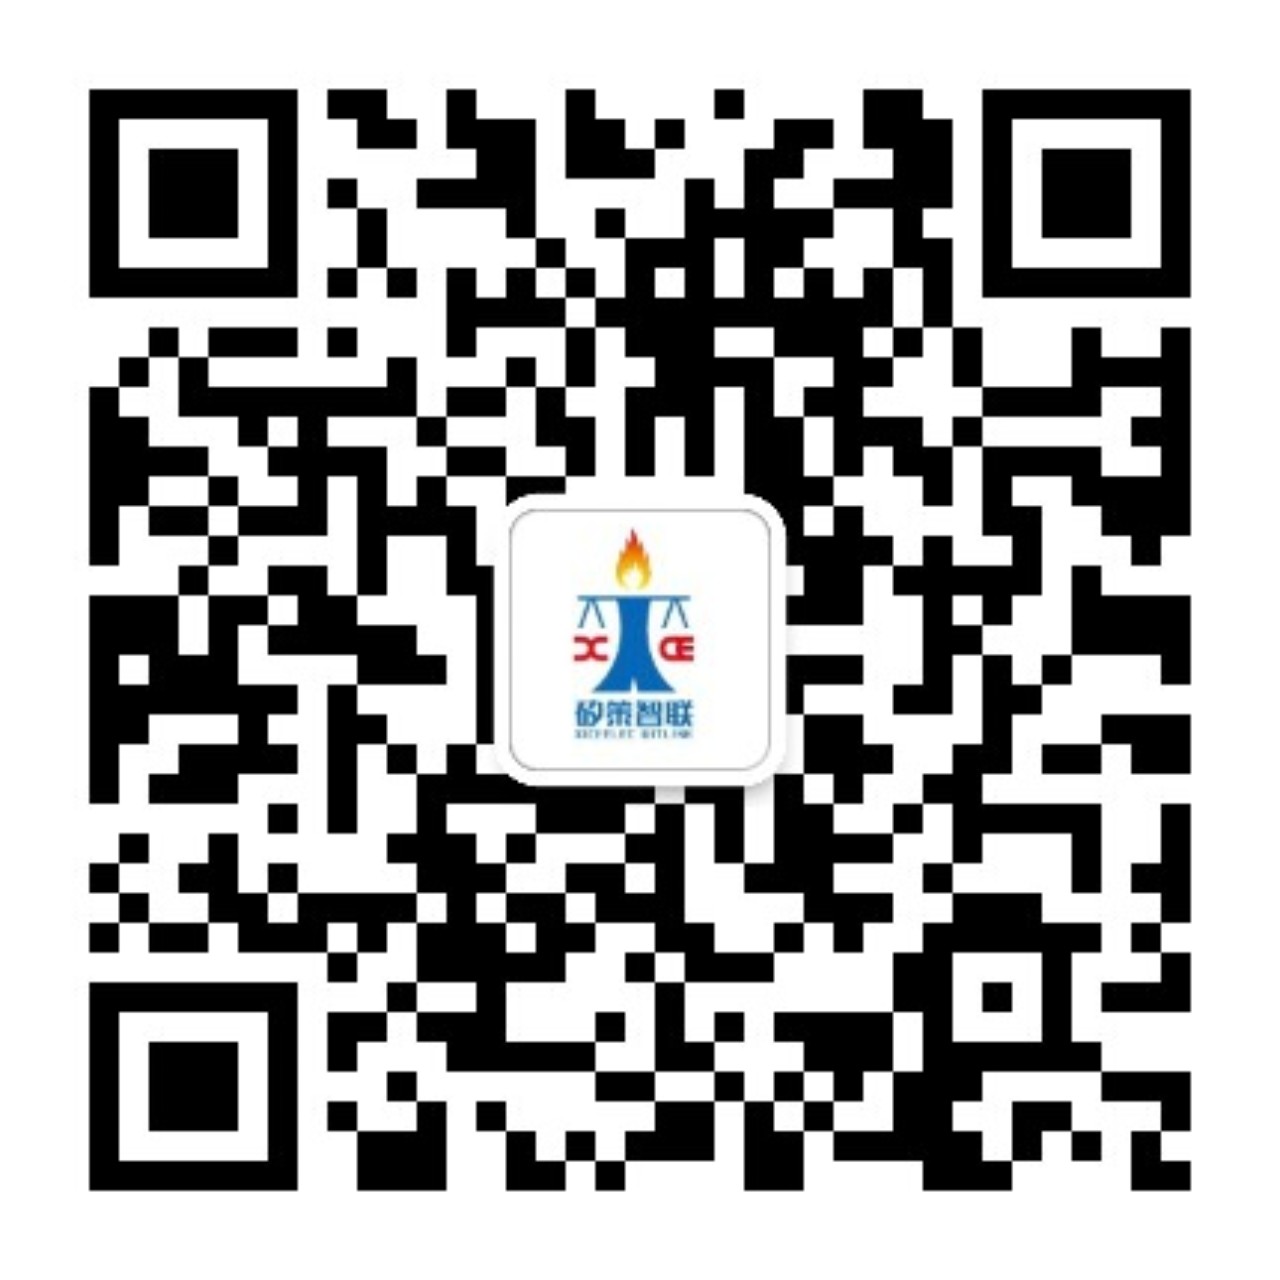 上海矽策电子科技有限公司